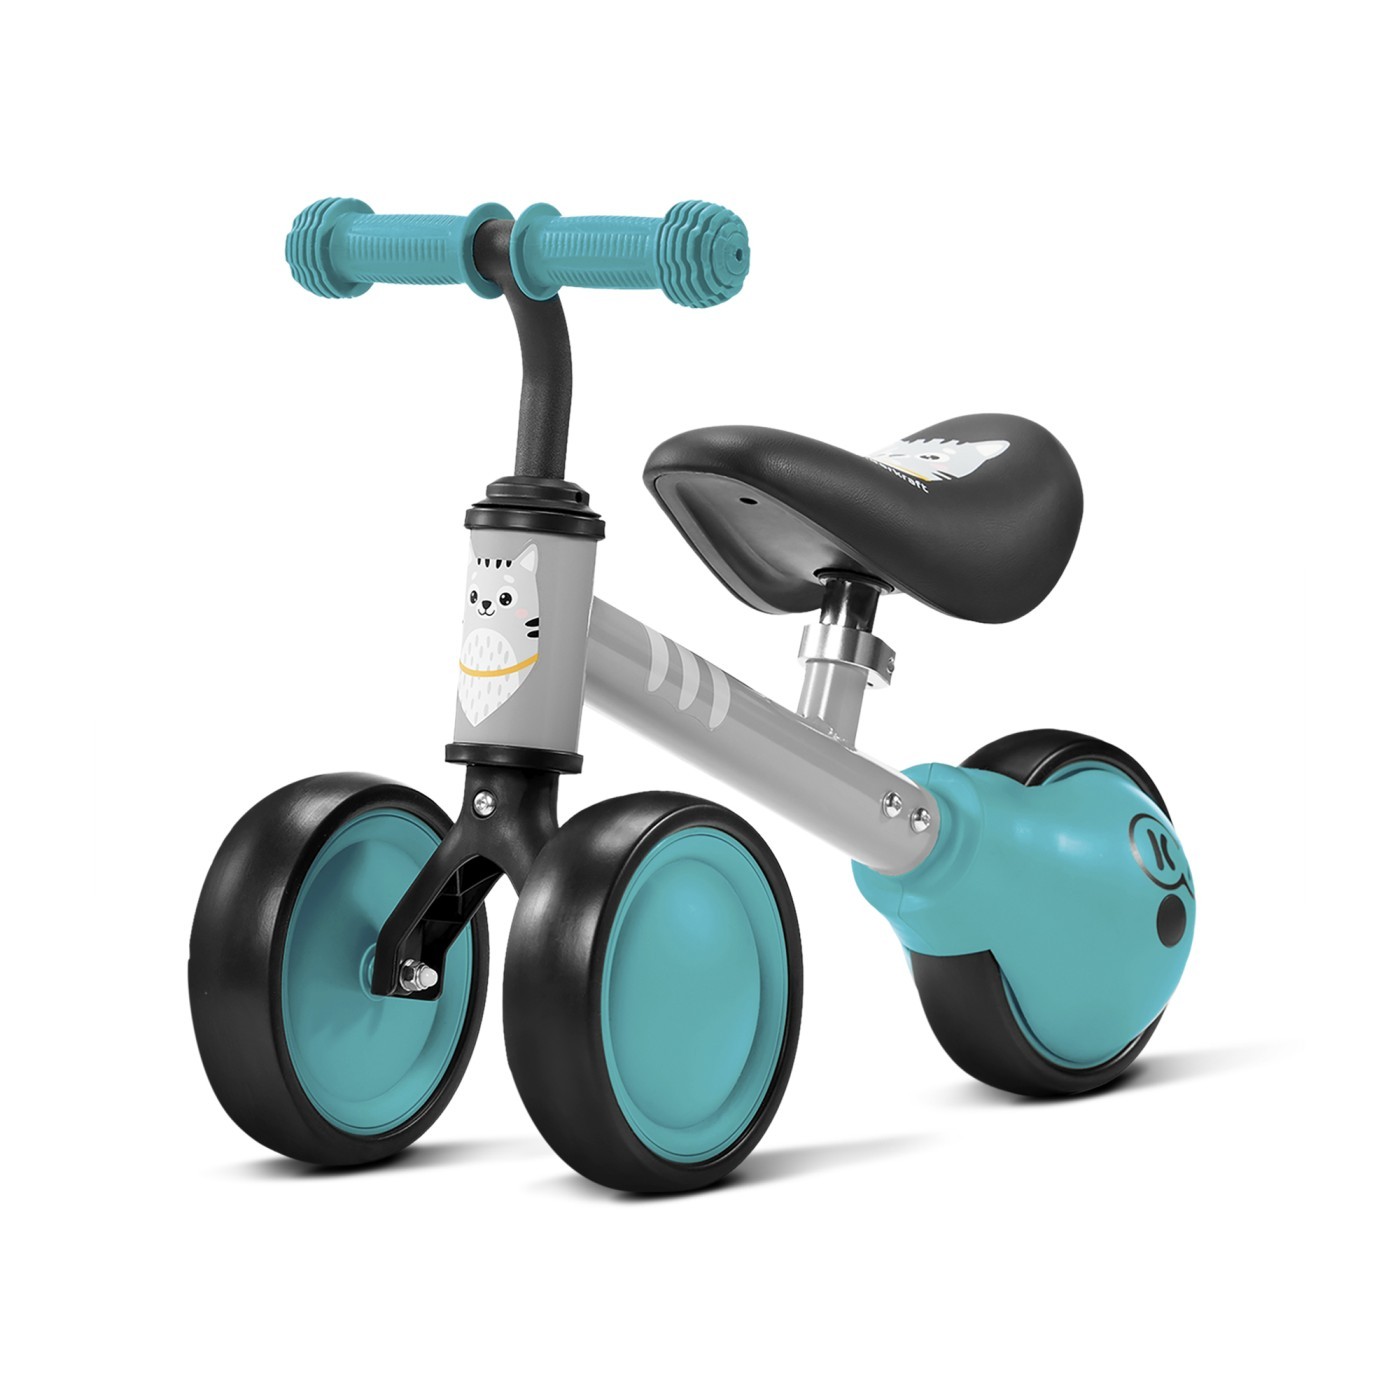 Tricicleta de echilibru Cutie, Turcoise, Kinderkraft